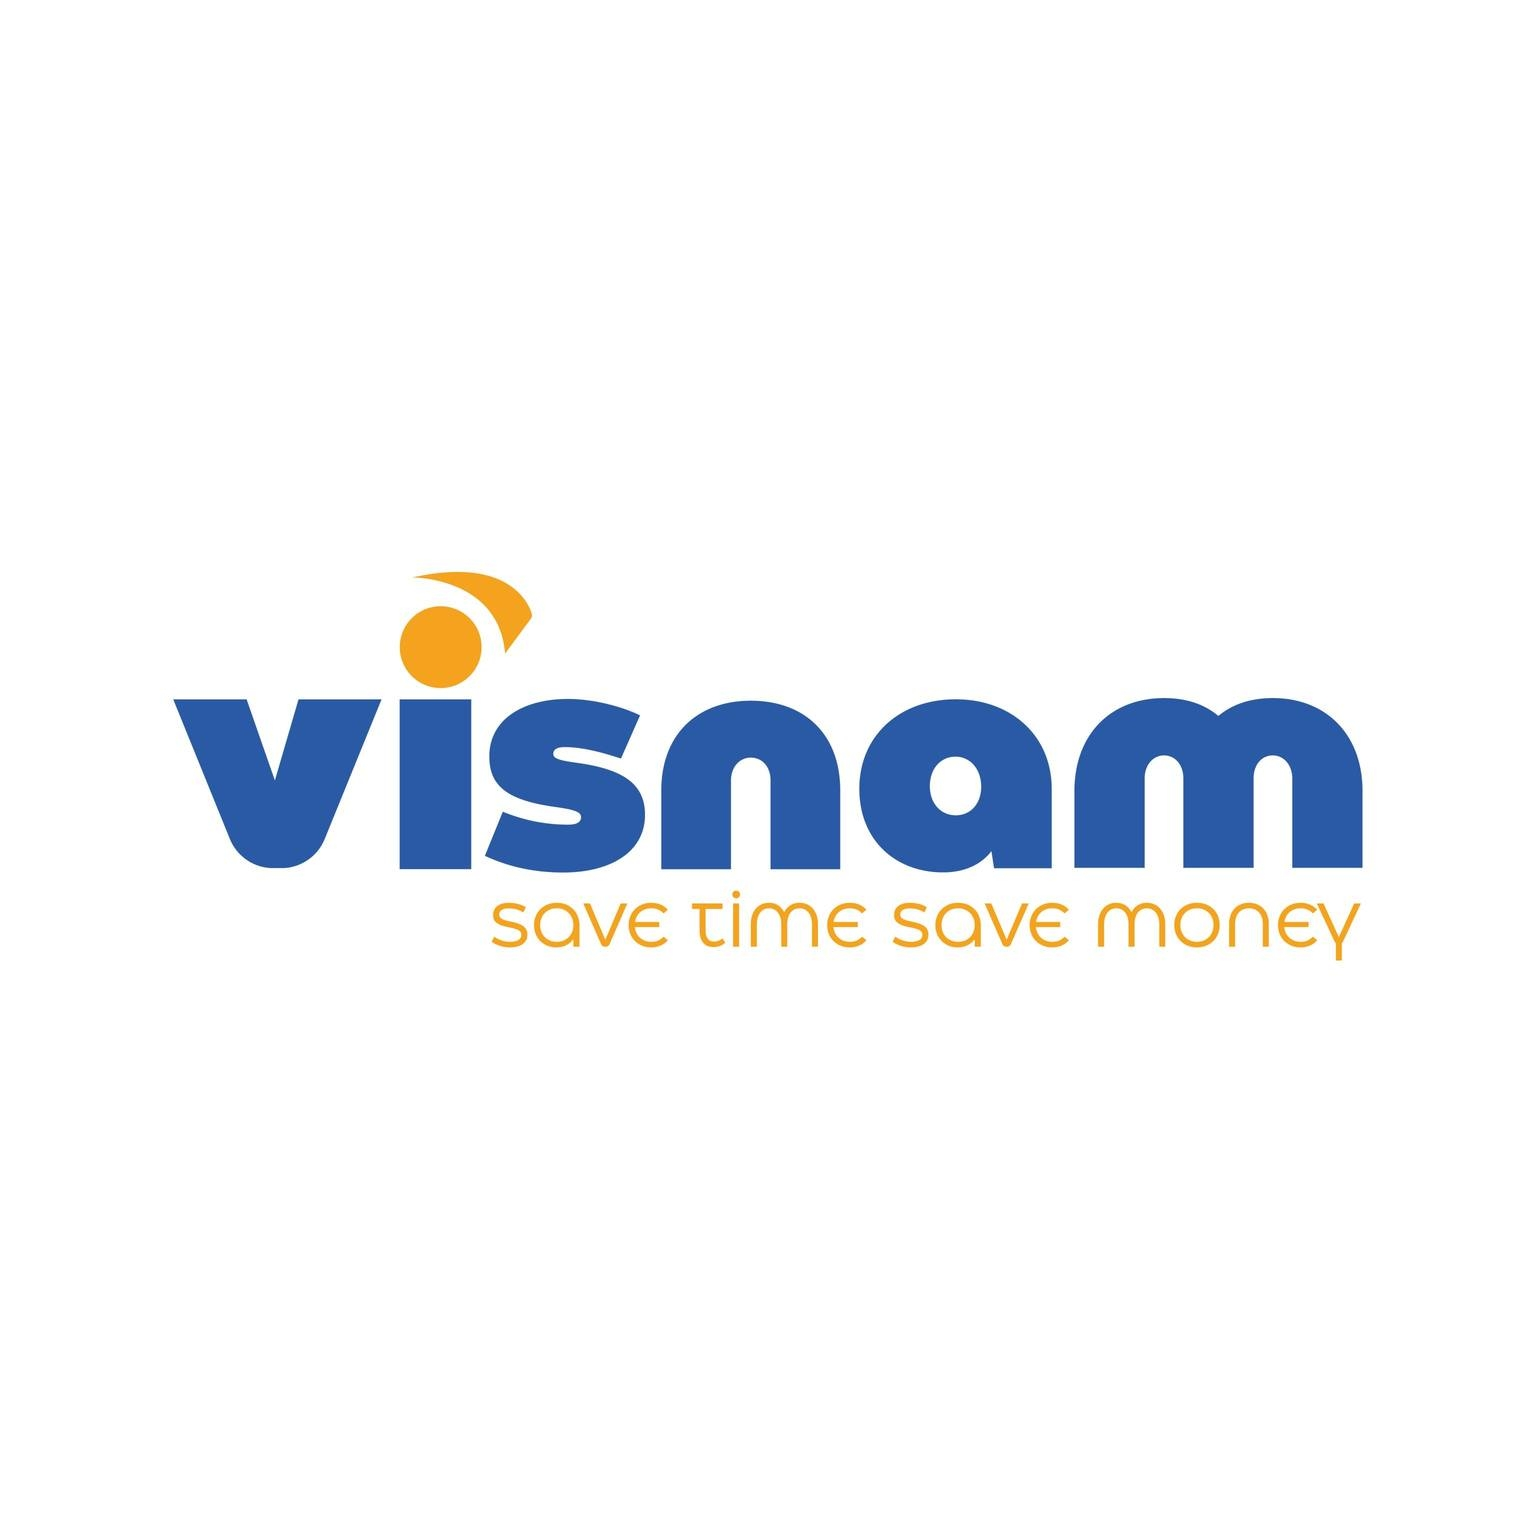 Logo Công ty Cổ phần Thương Mại Visnam